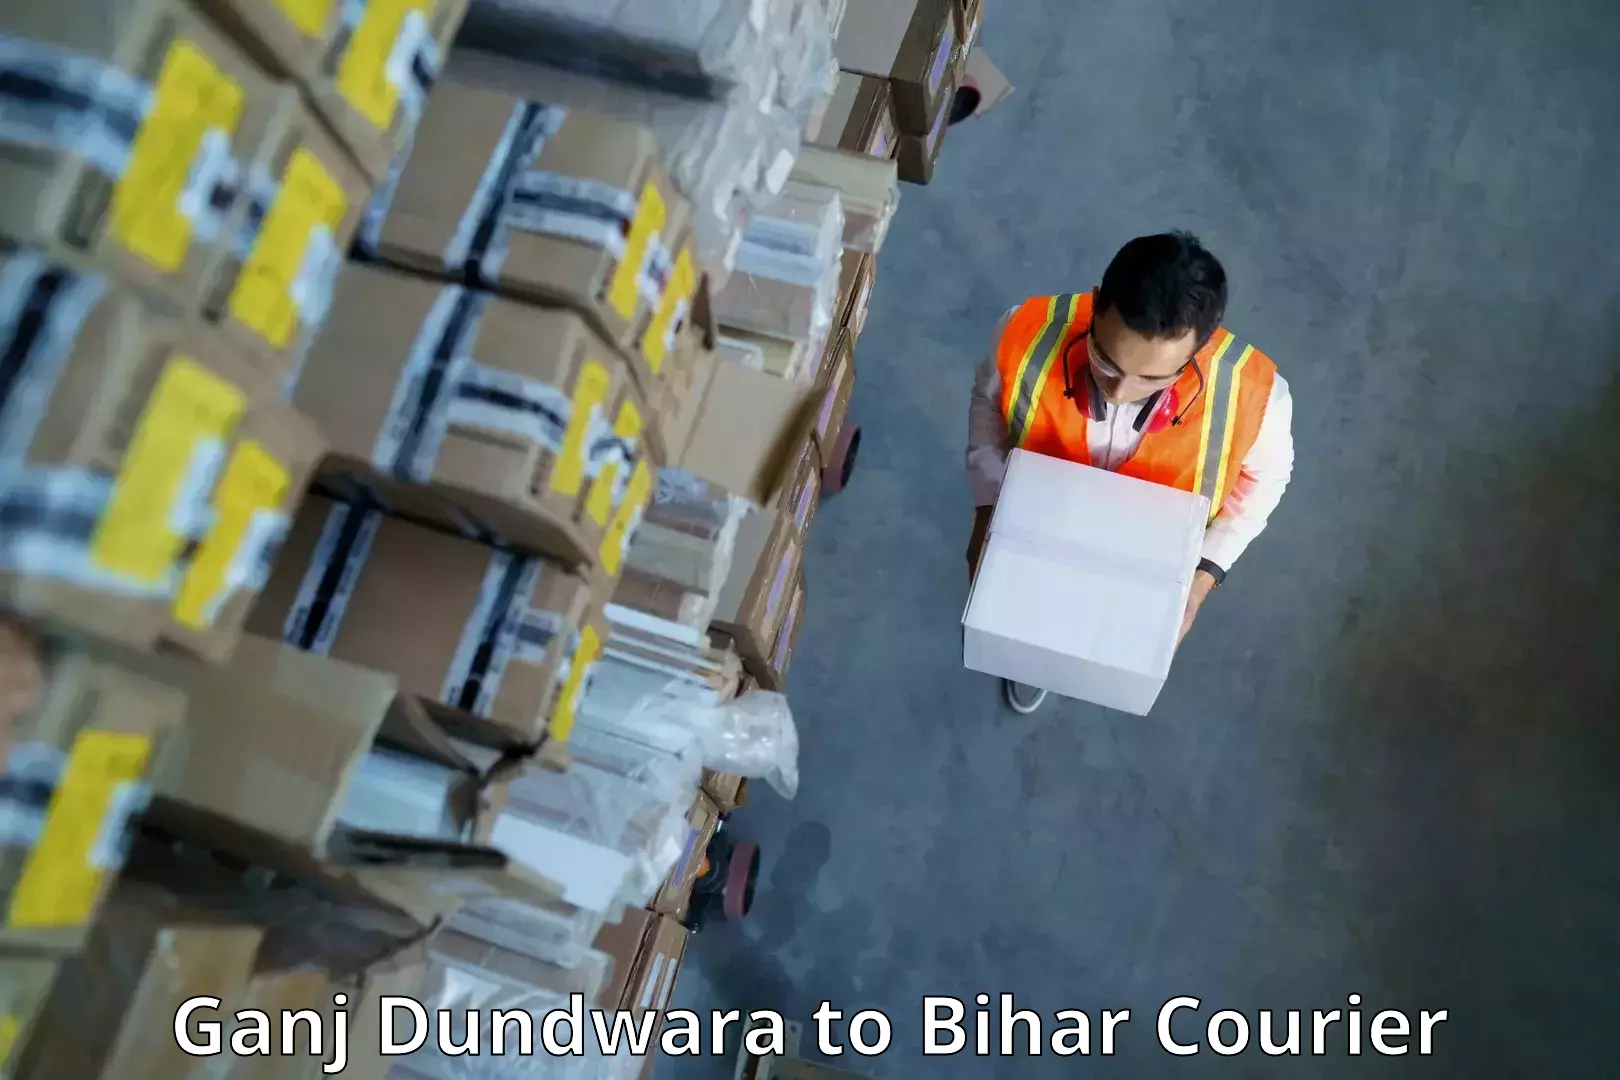 Nationwide shipping capabilities Ganj Dundwara to Bihar